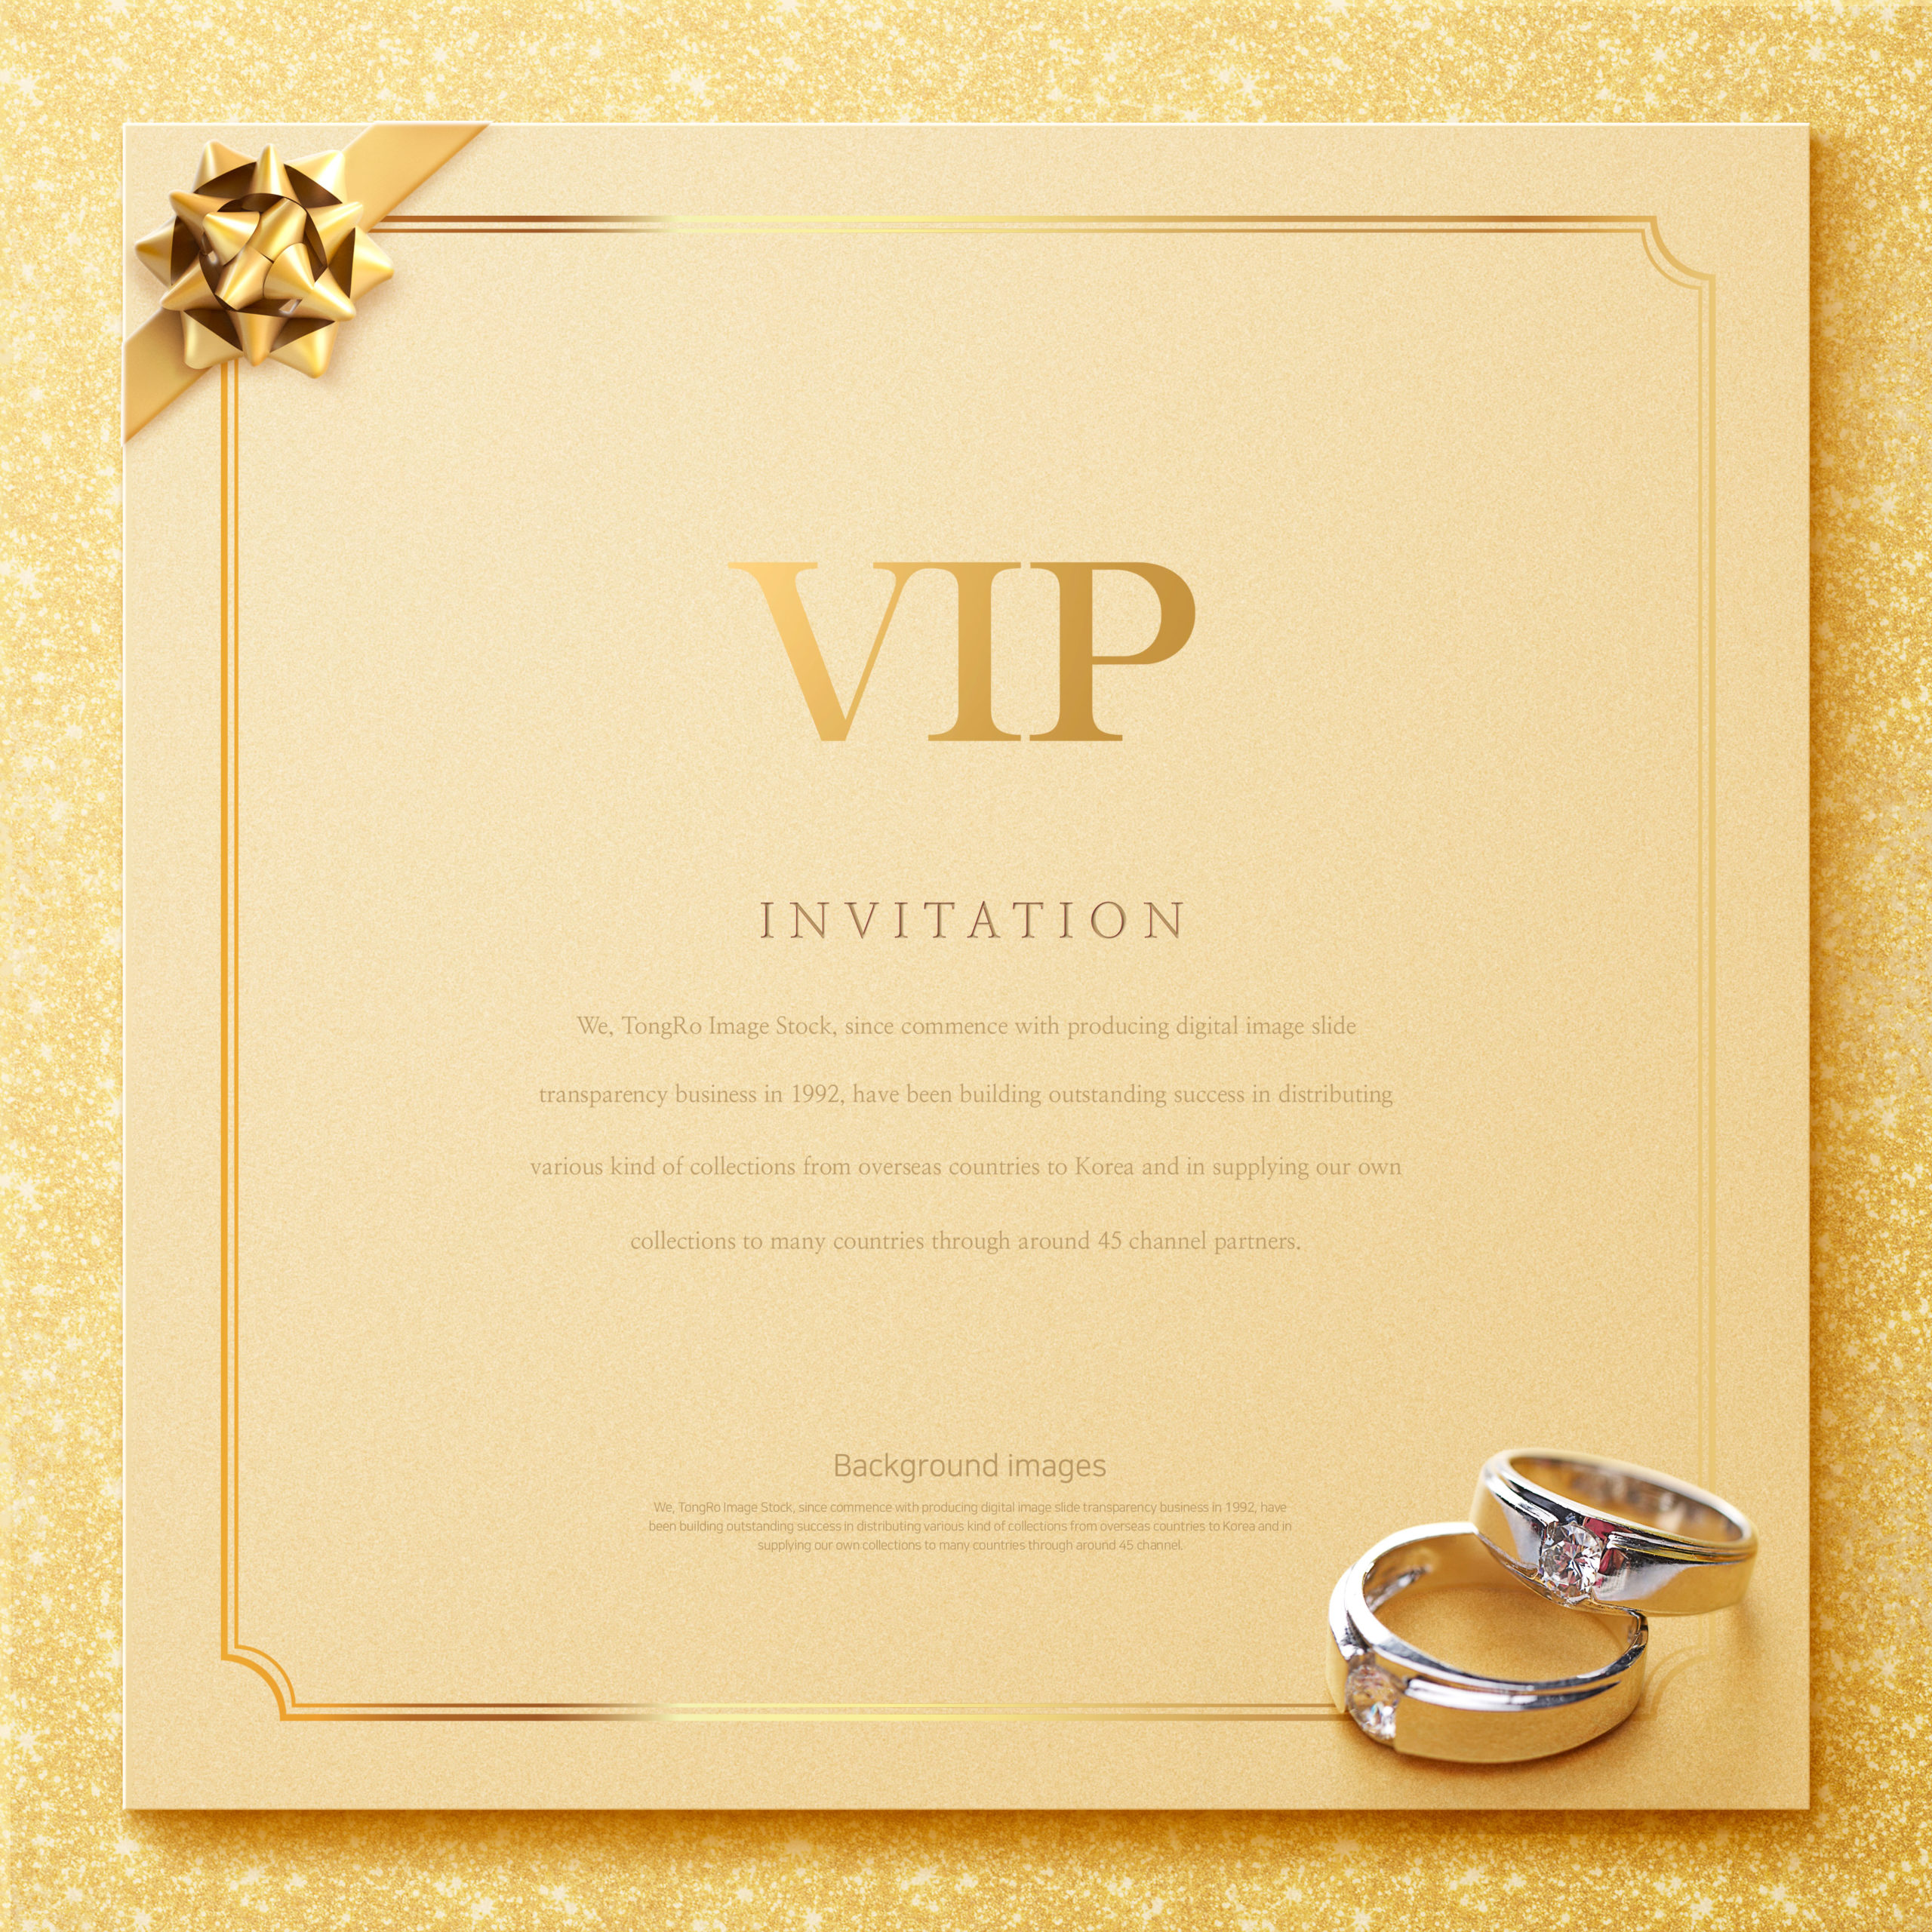 高雅奢华的VIP贵宾邀请邀请函海报背景图片套装V2[PSD]插图(5)